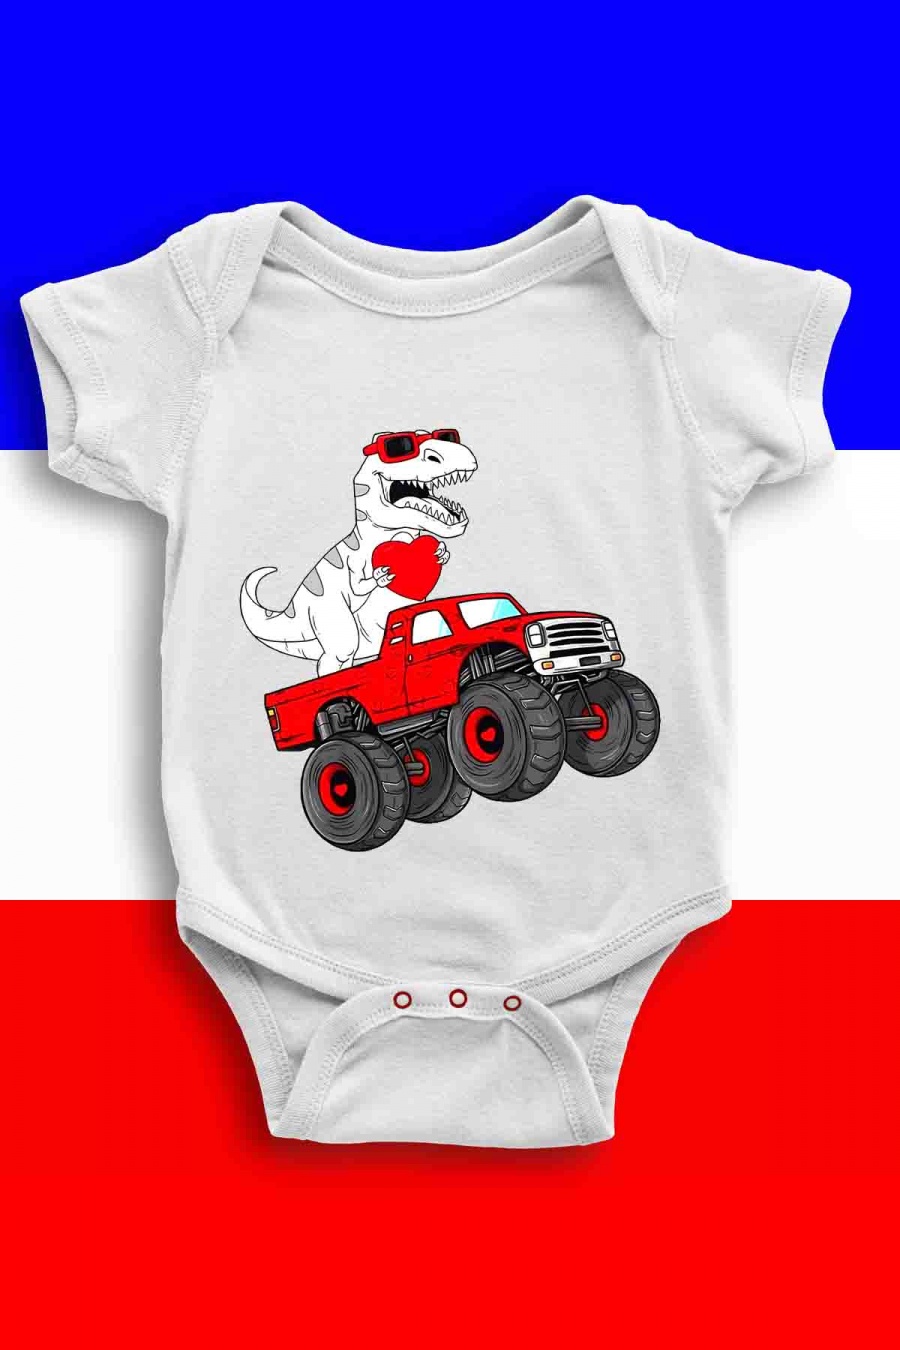 Outfits & Bodies Kid & Babies White Impression A La Demande I.A.L.D BODY BÉBÉ - 4X4 DINO #c Efashion Paris